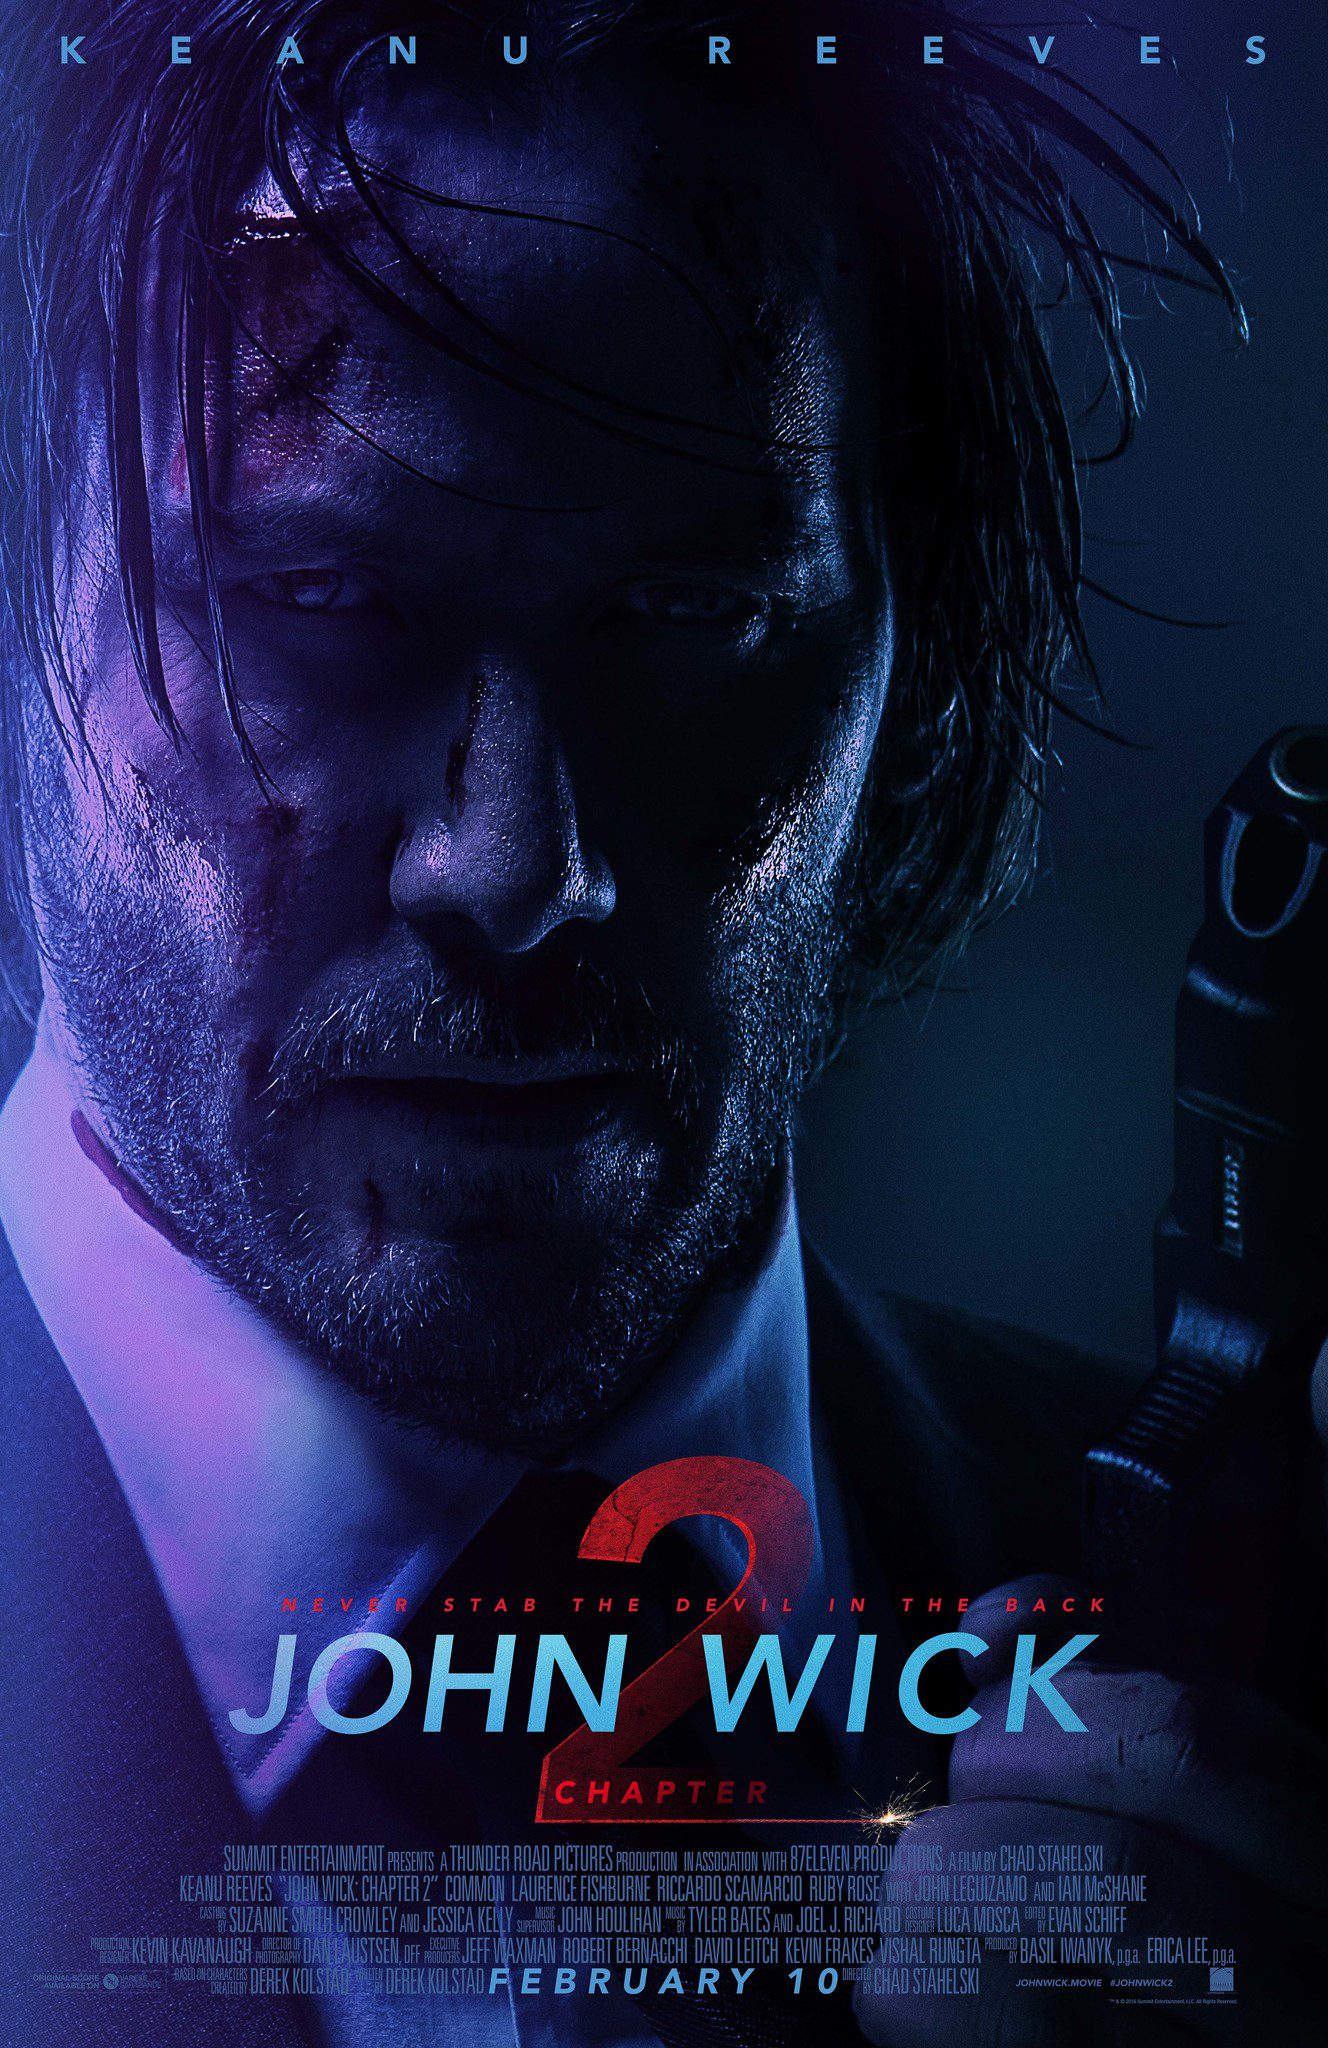 ดูหนังออนไลน์ฟรี John Wick: Chapter 2 จอห์น วิค แรงกว่านรก 2